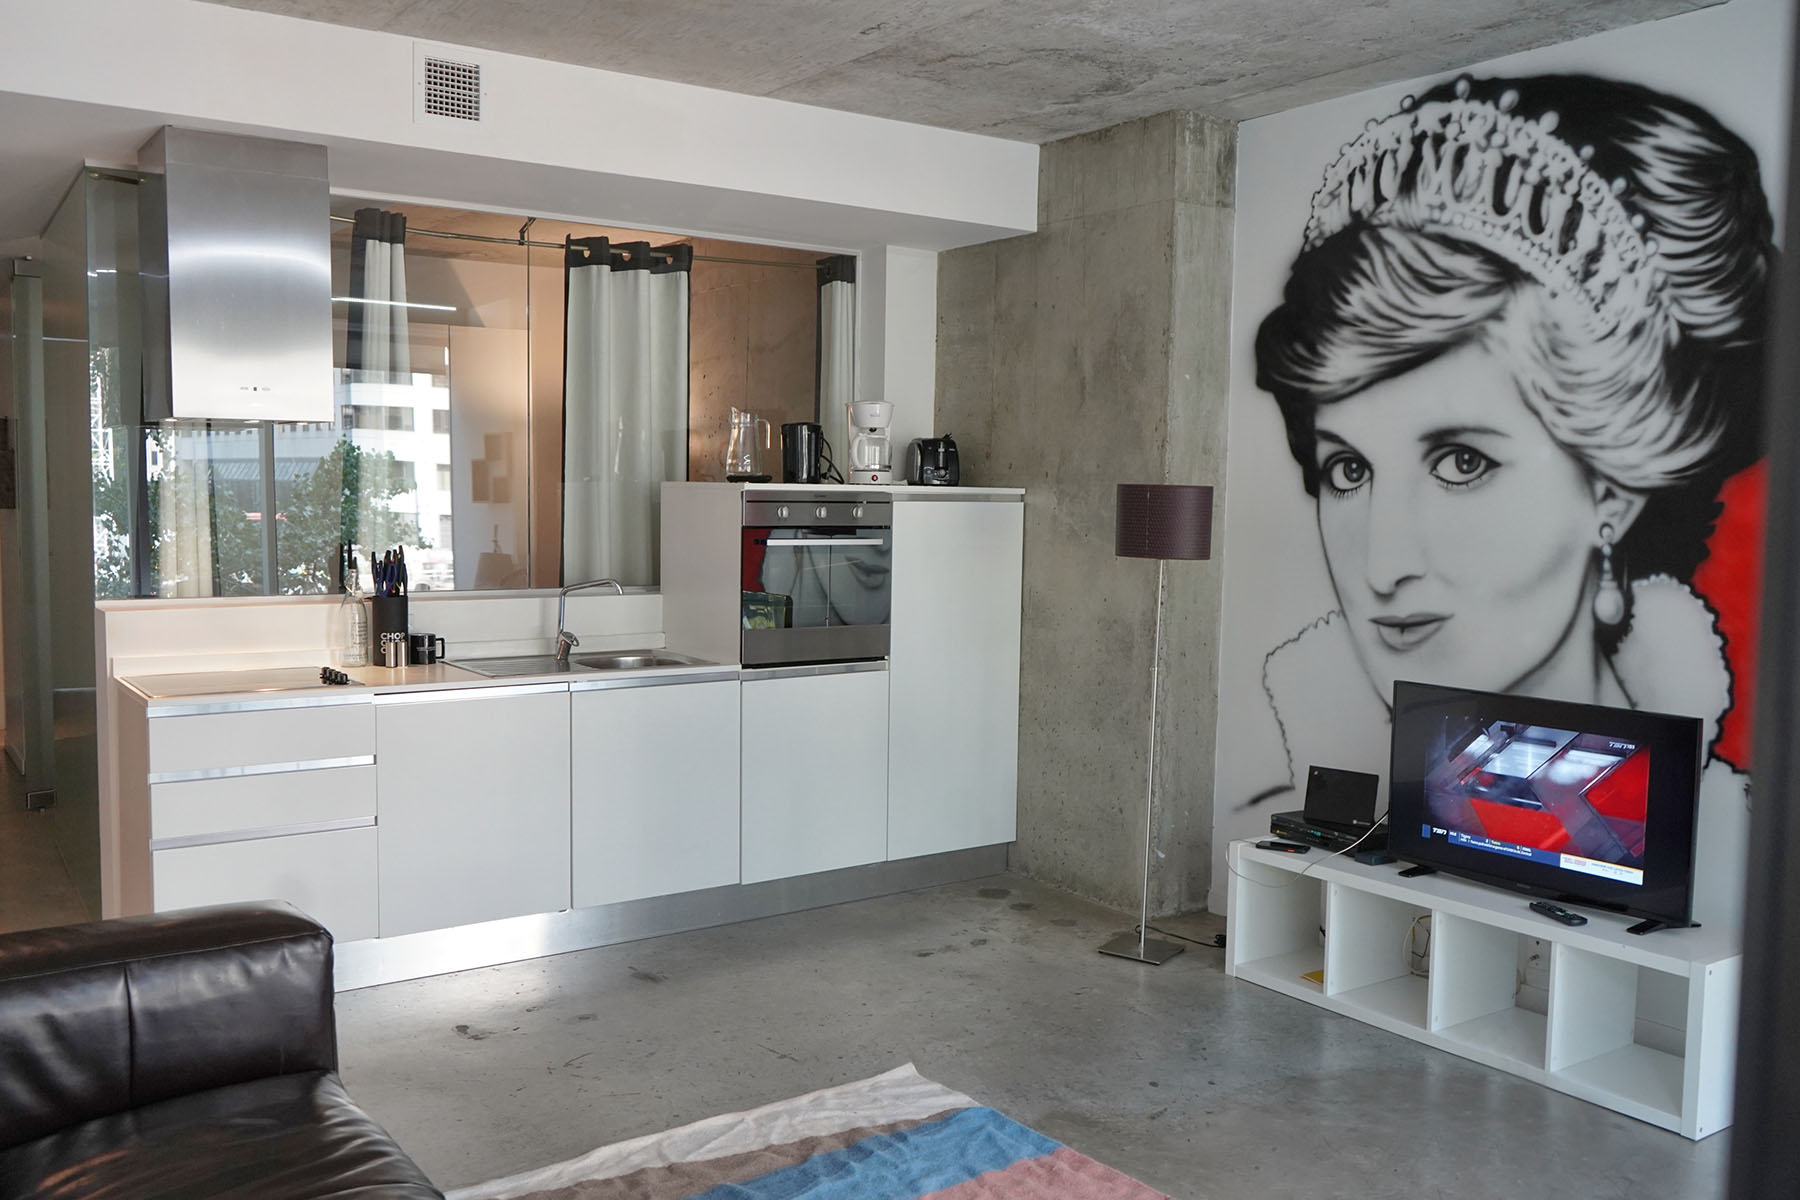 "Loft4U 2 Bedroom Kitchen for Rent in Montreal